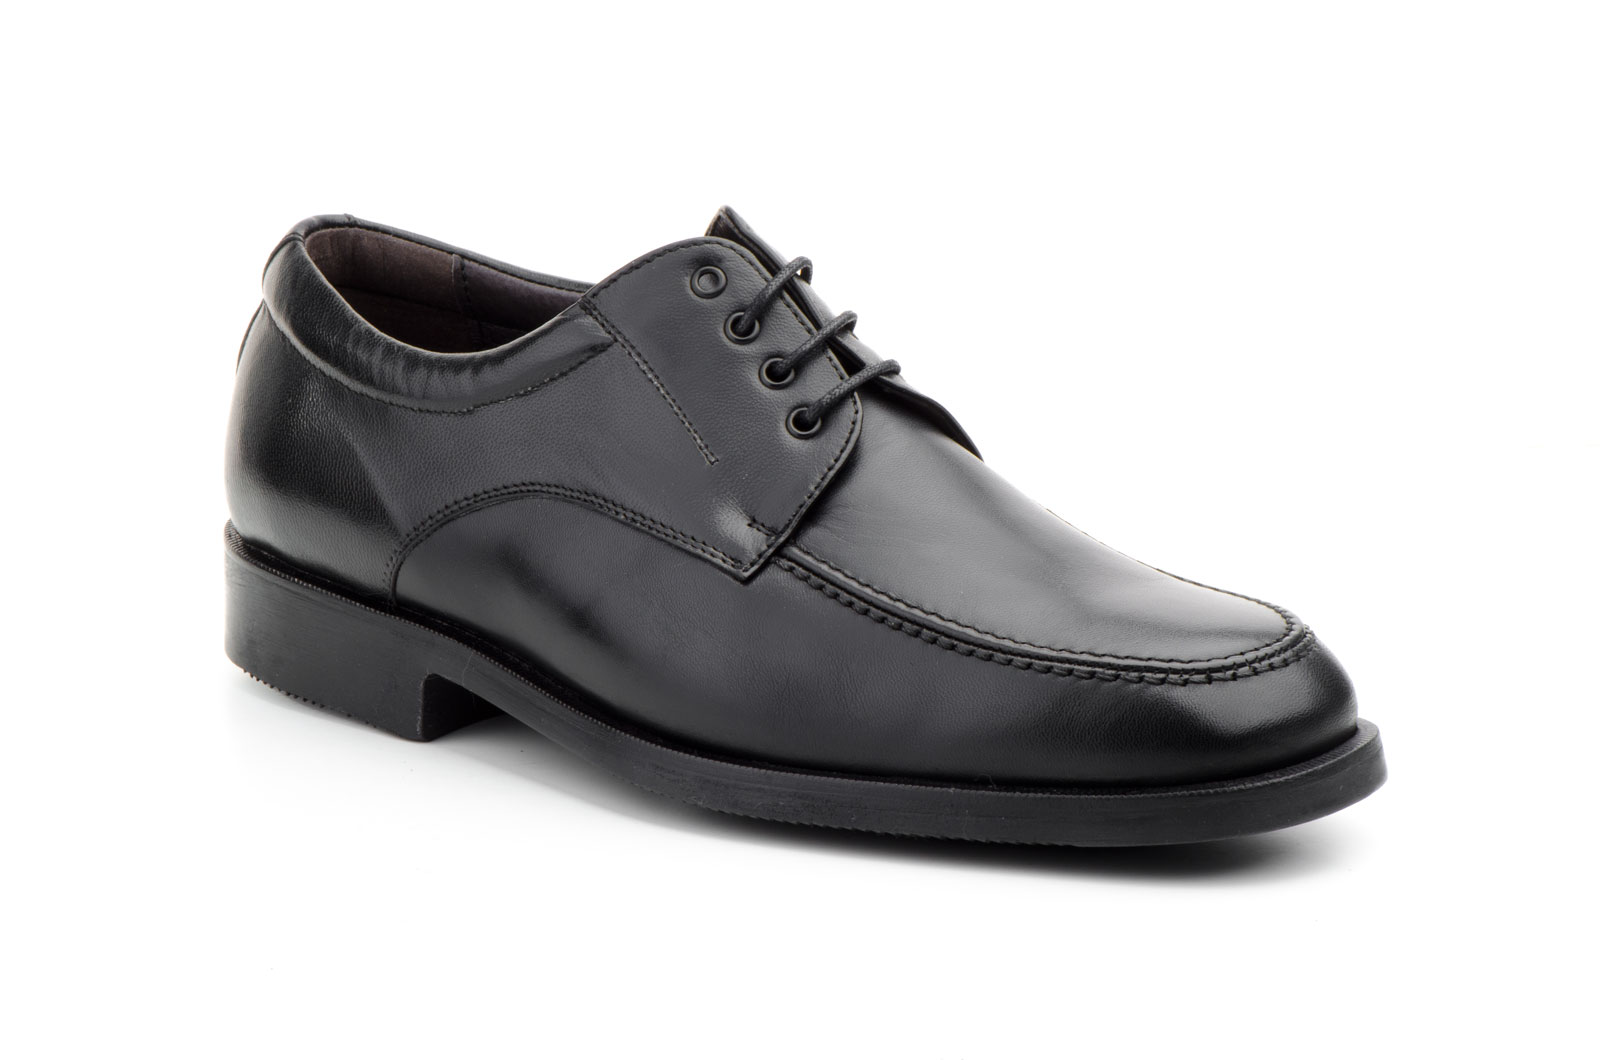 Zapatos Hombre Piel Negro Cordones Ancho Especial 12  -  Ref. 2780 Negro